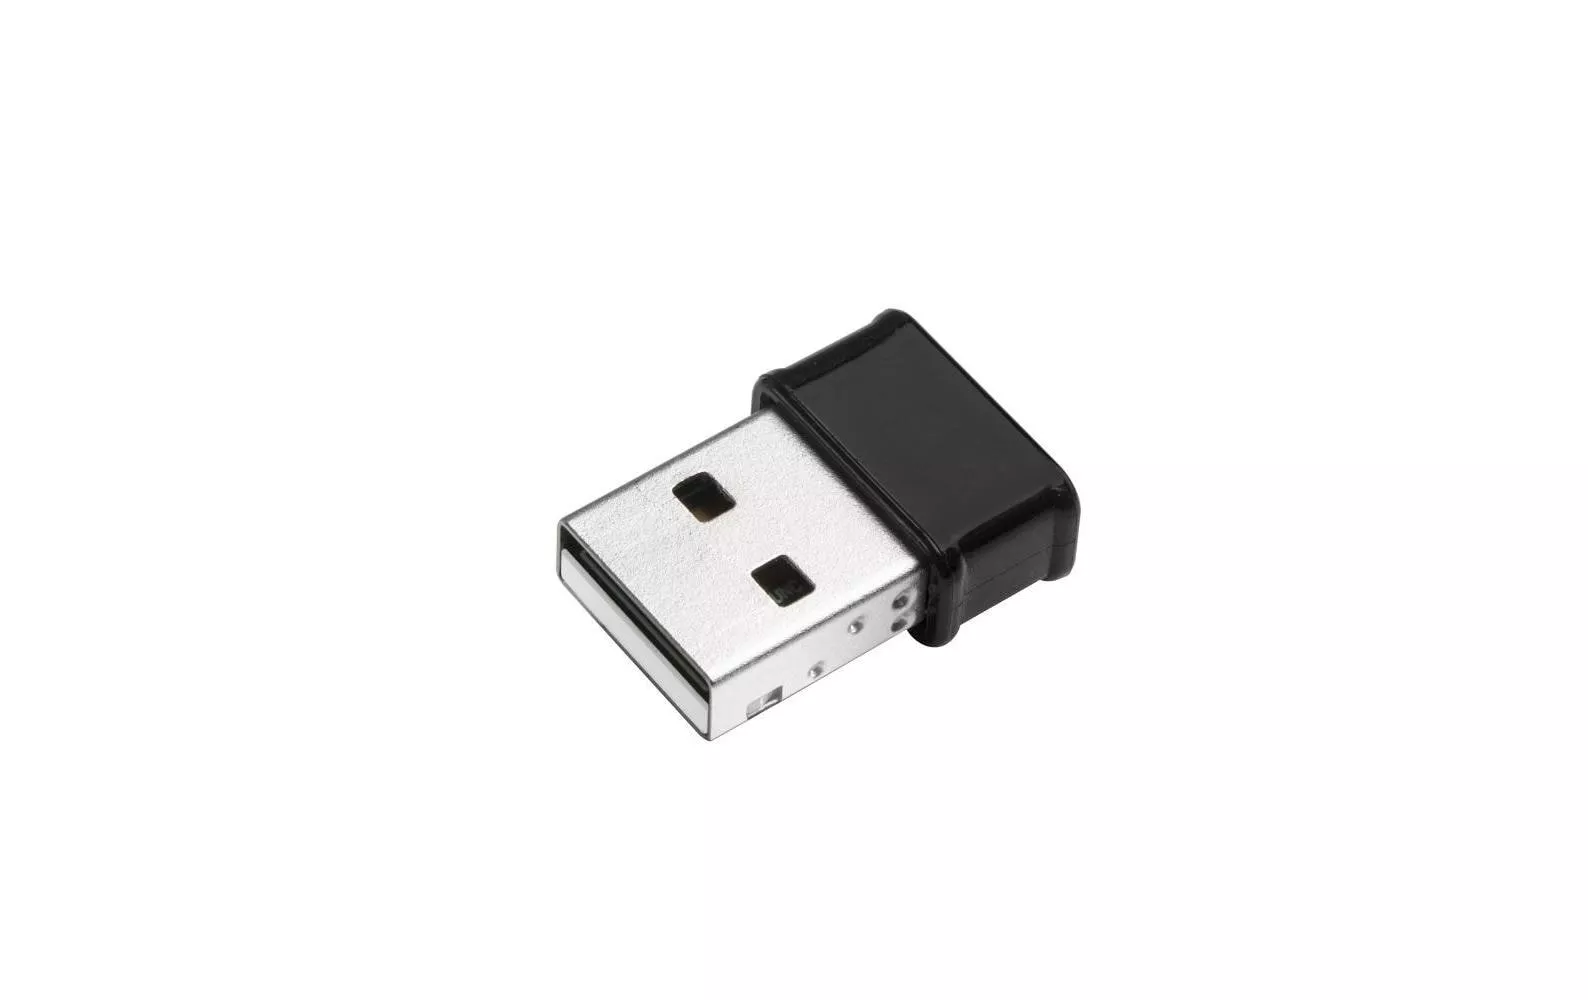 WLAN-AC USB Stick Nano EW-7822ULC